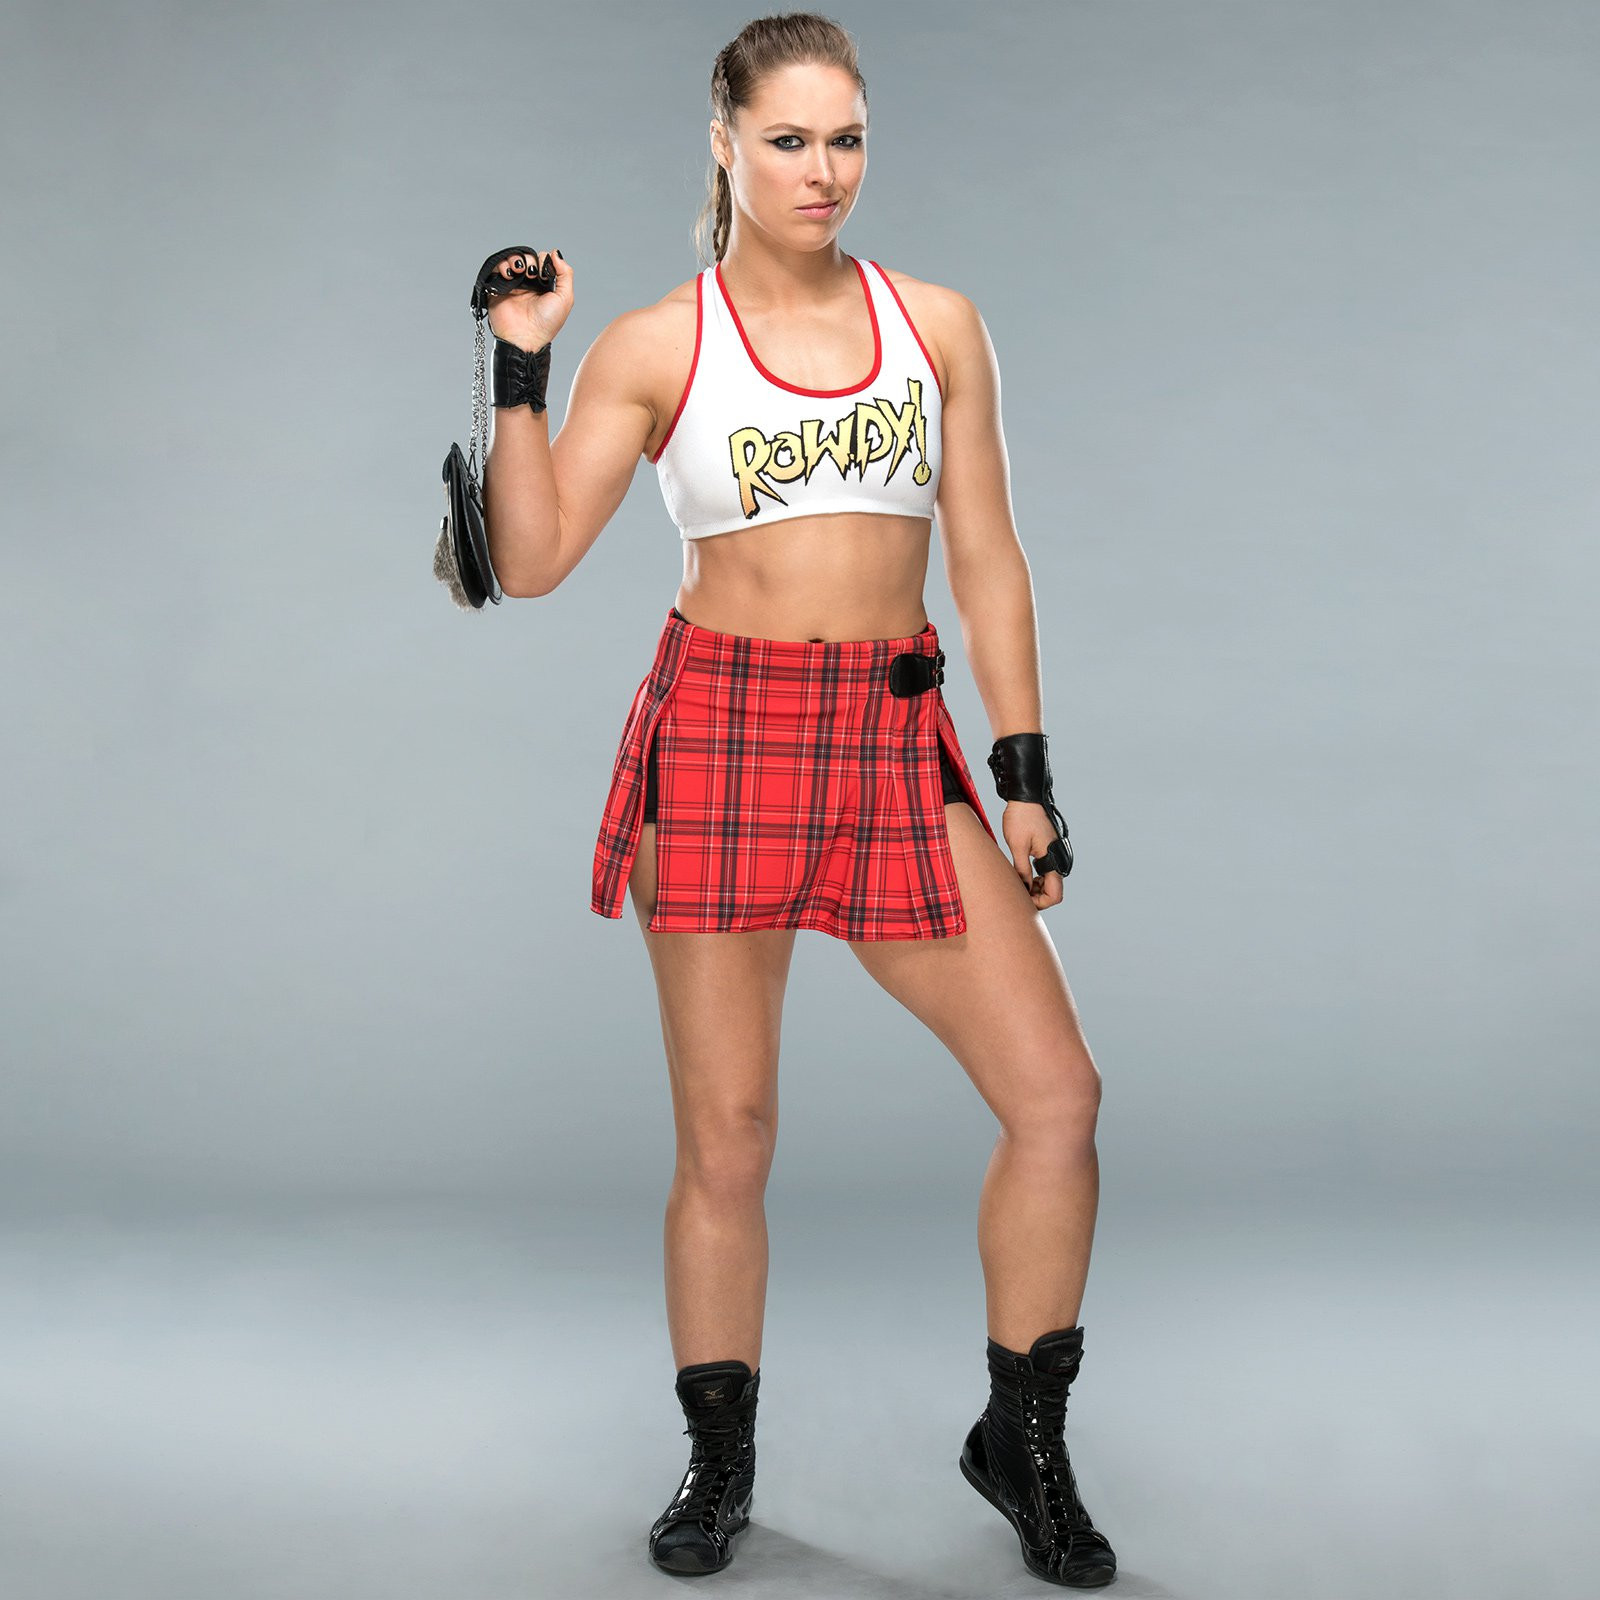 Ронда Раузи (Ronda Rousey)